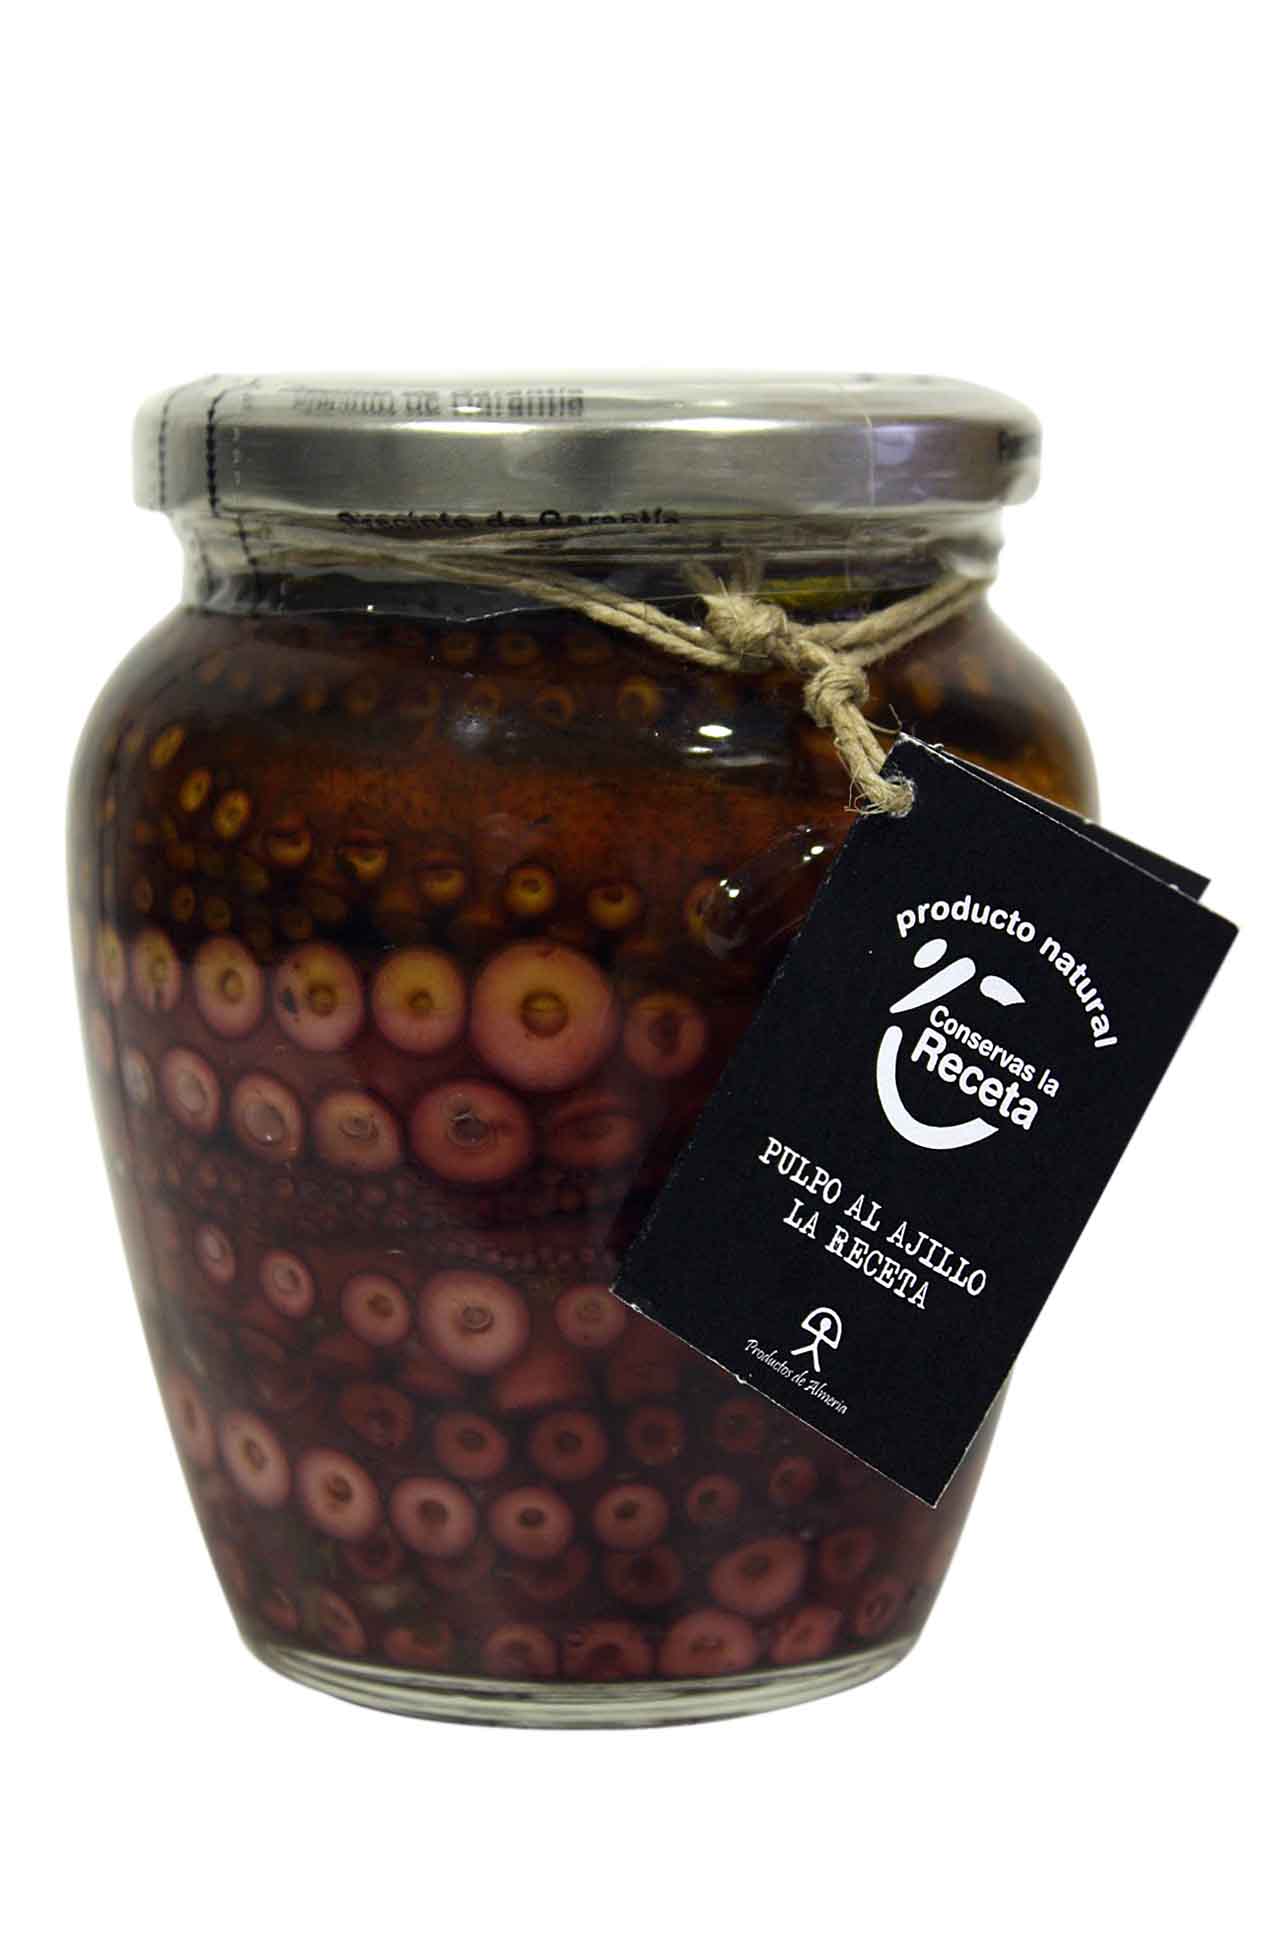 Large octopus in garlic sauce